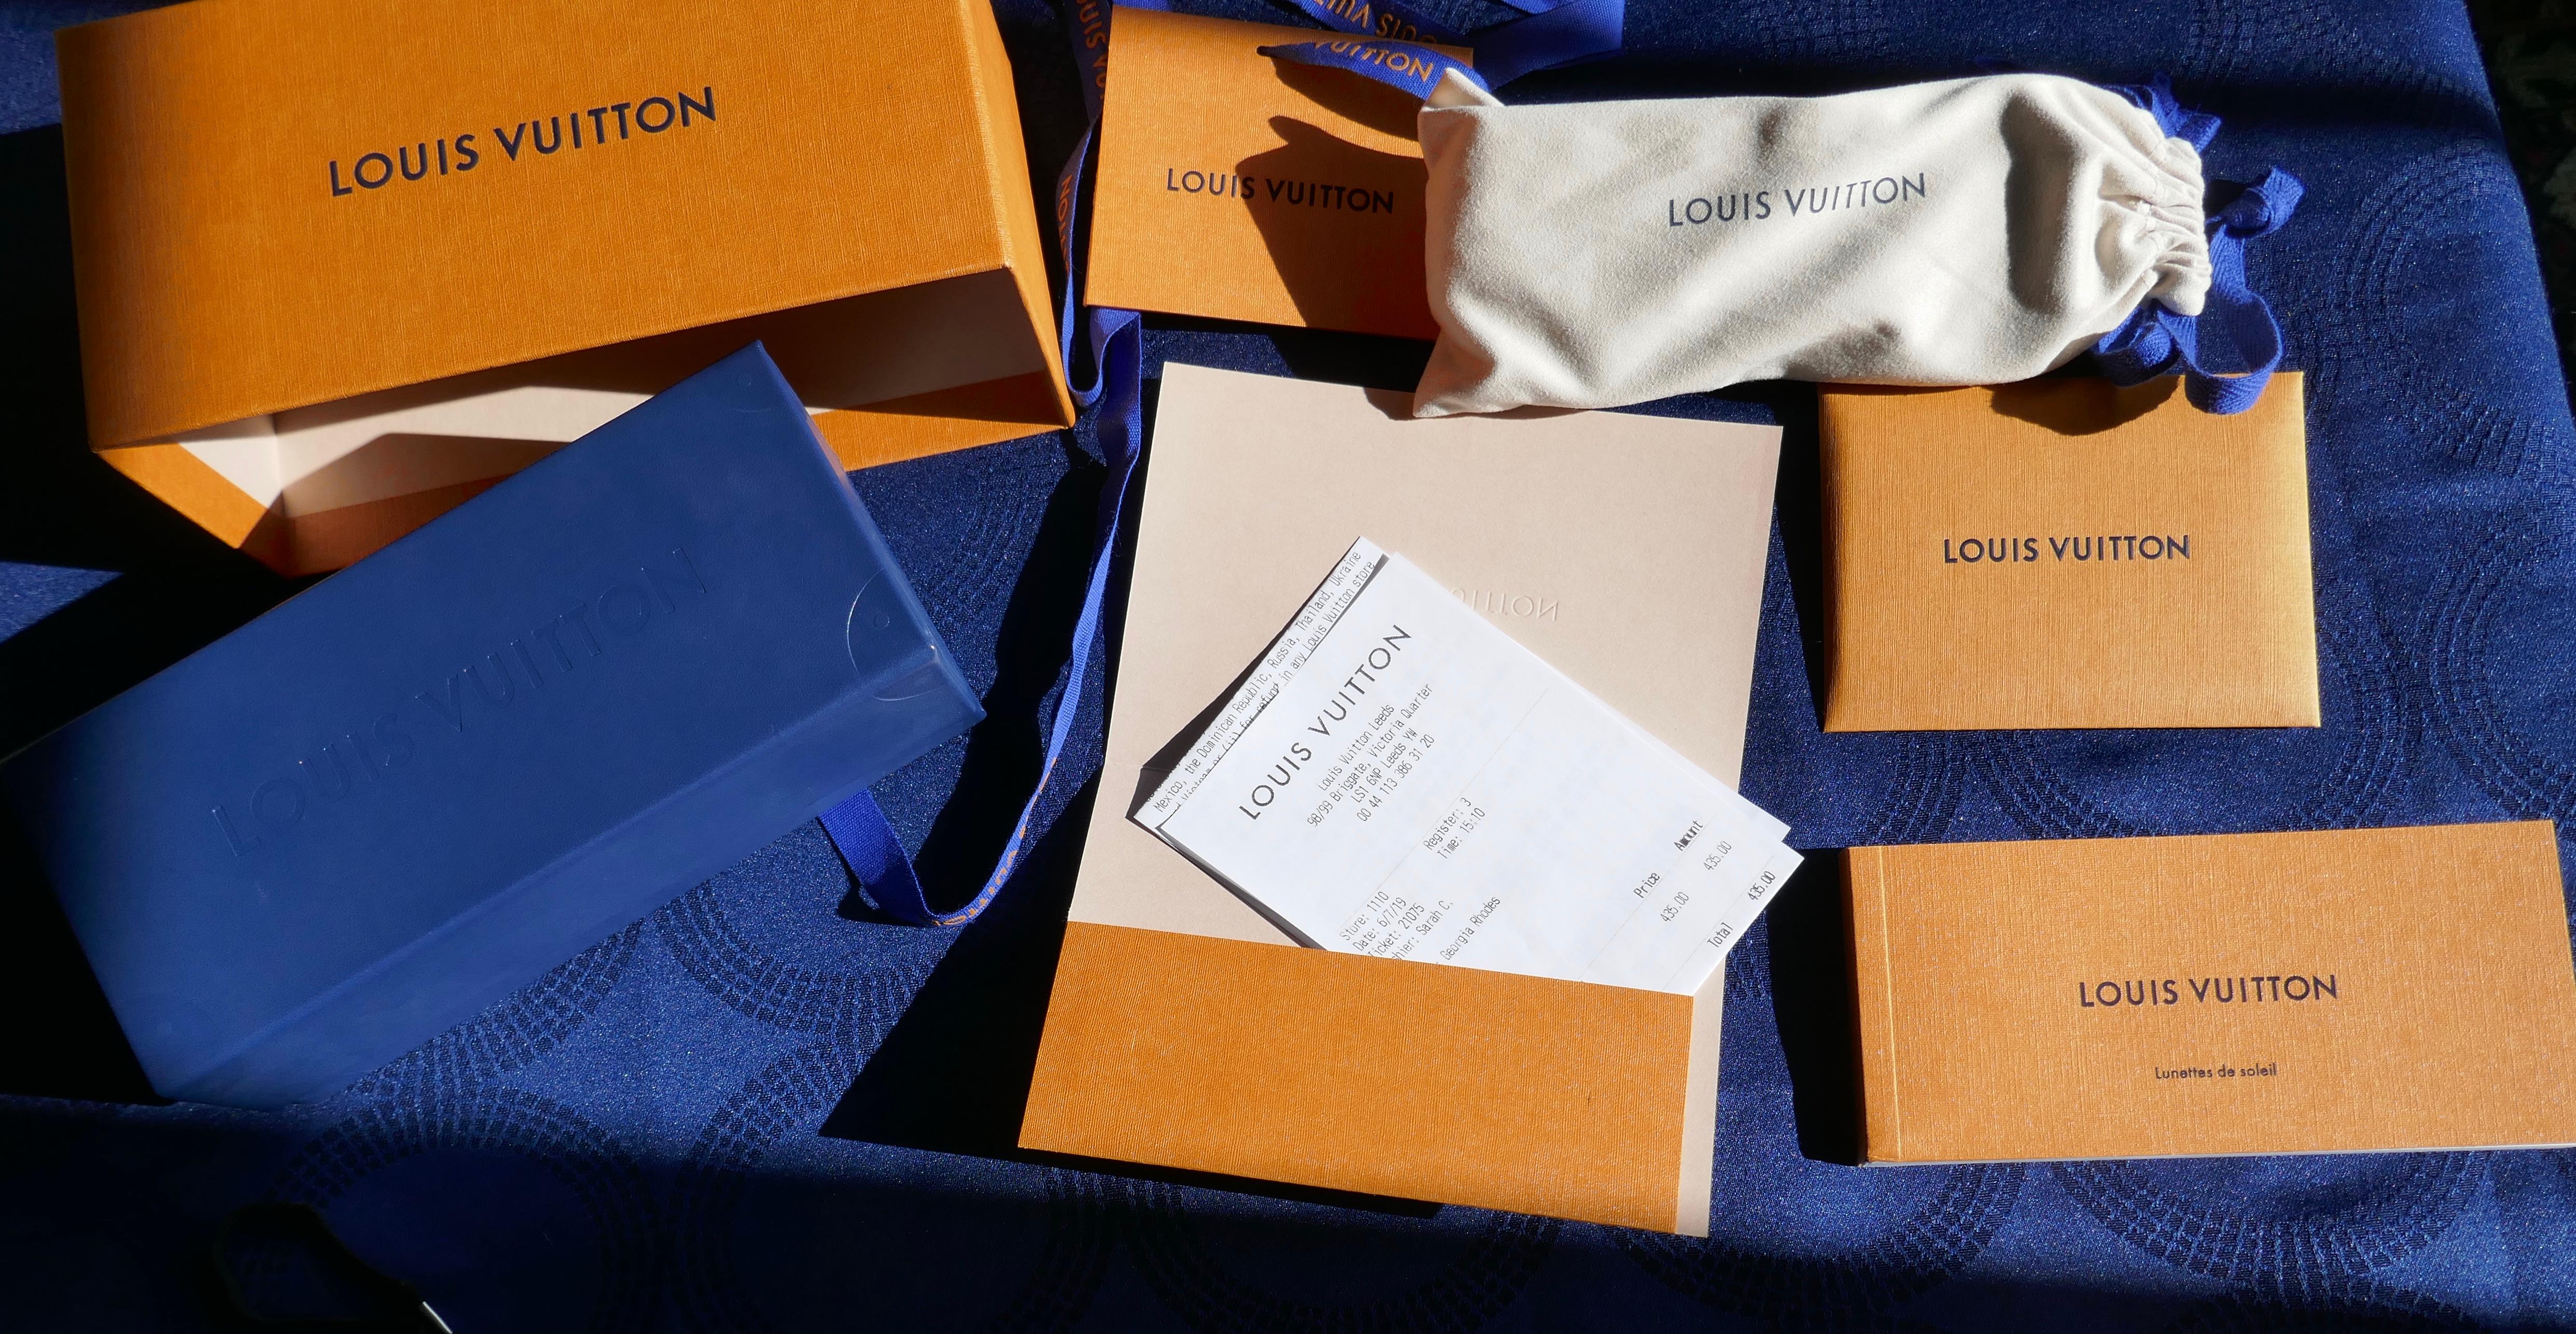 Pair of Louis Vuitton Paris Texas Sunshades Authentic With Receipt Case Box Etc For Sale 2